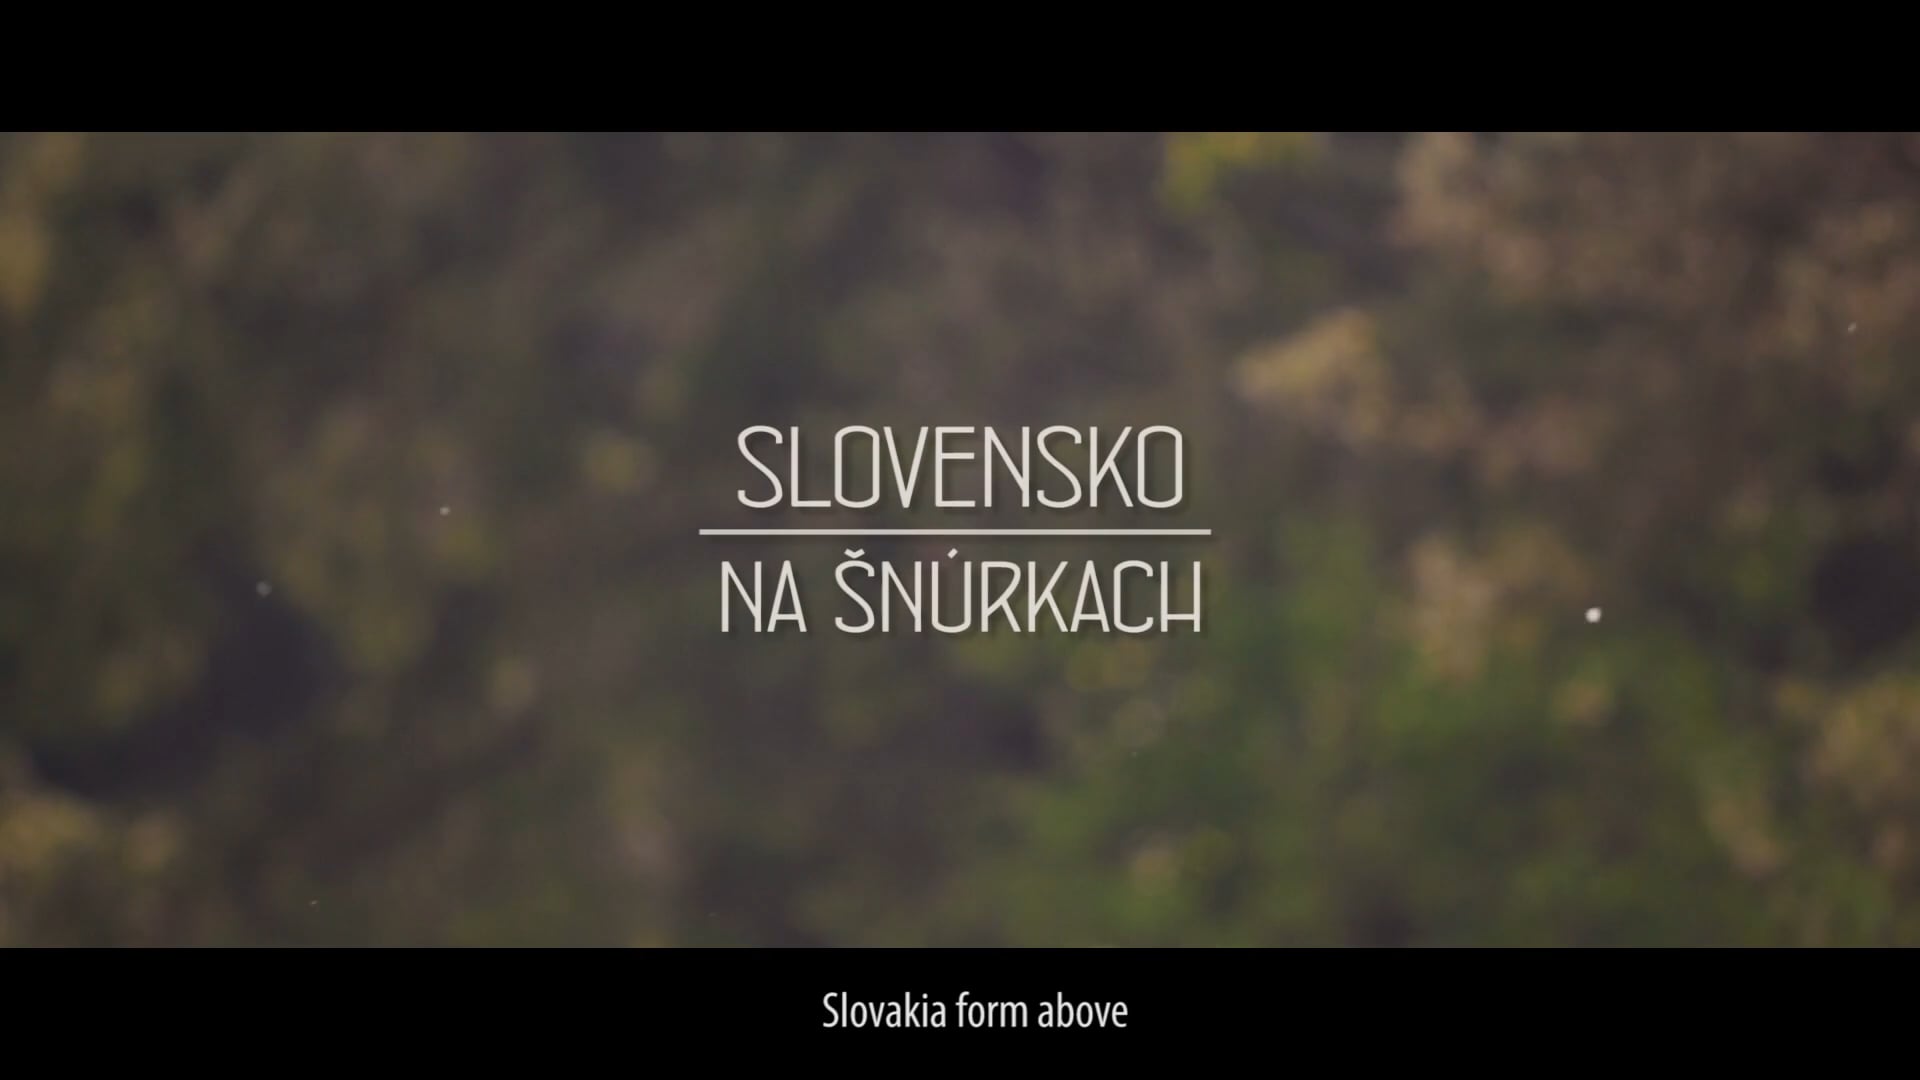 Slovensko na šnúrkach / Slovakia from above